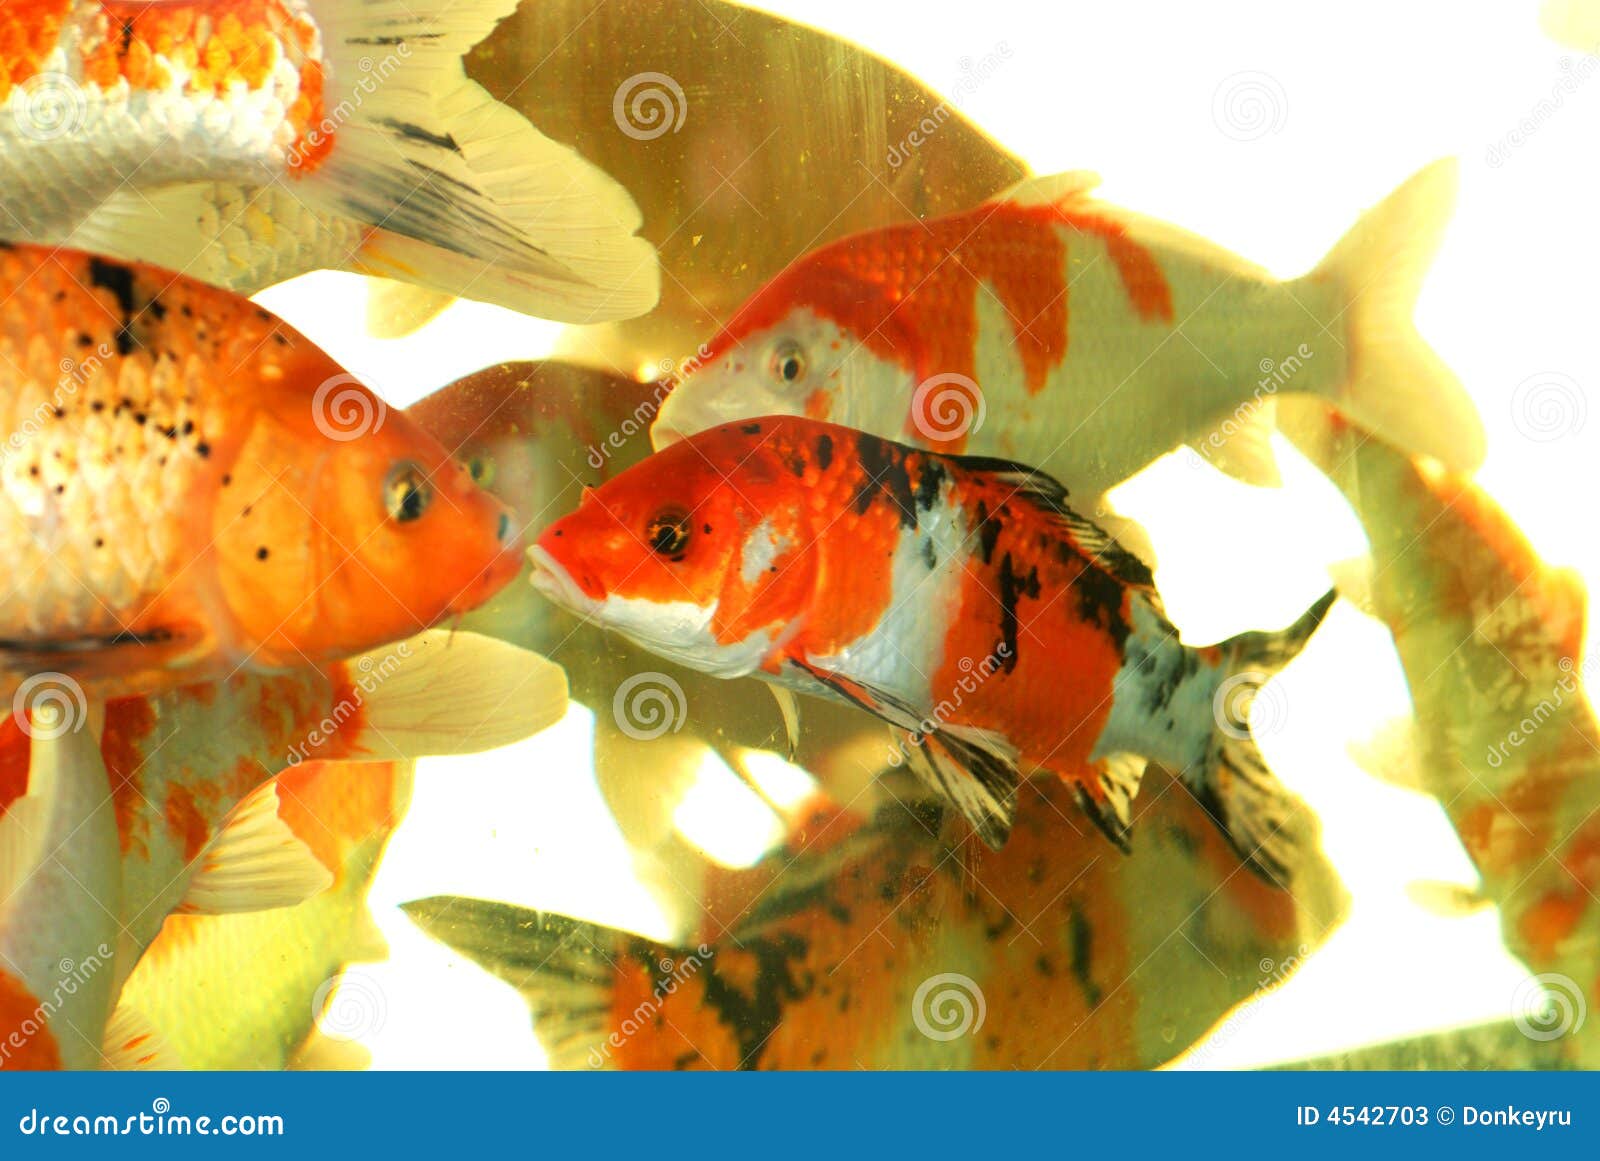 auspicious koi fishes